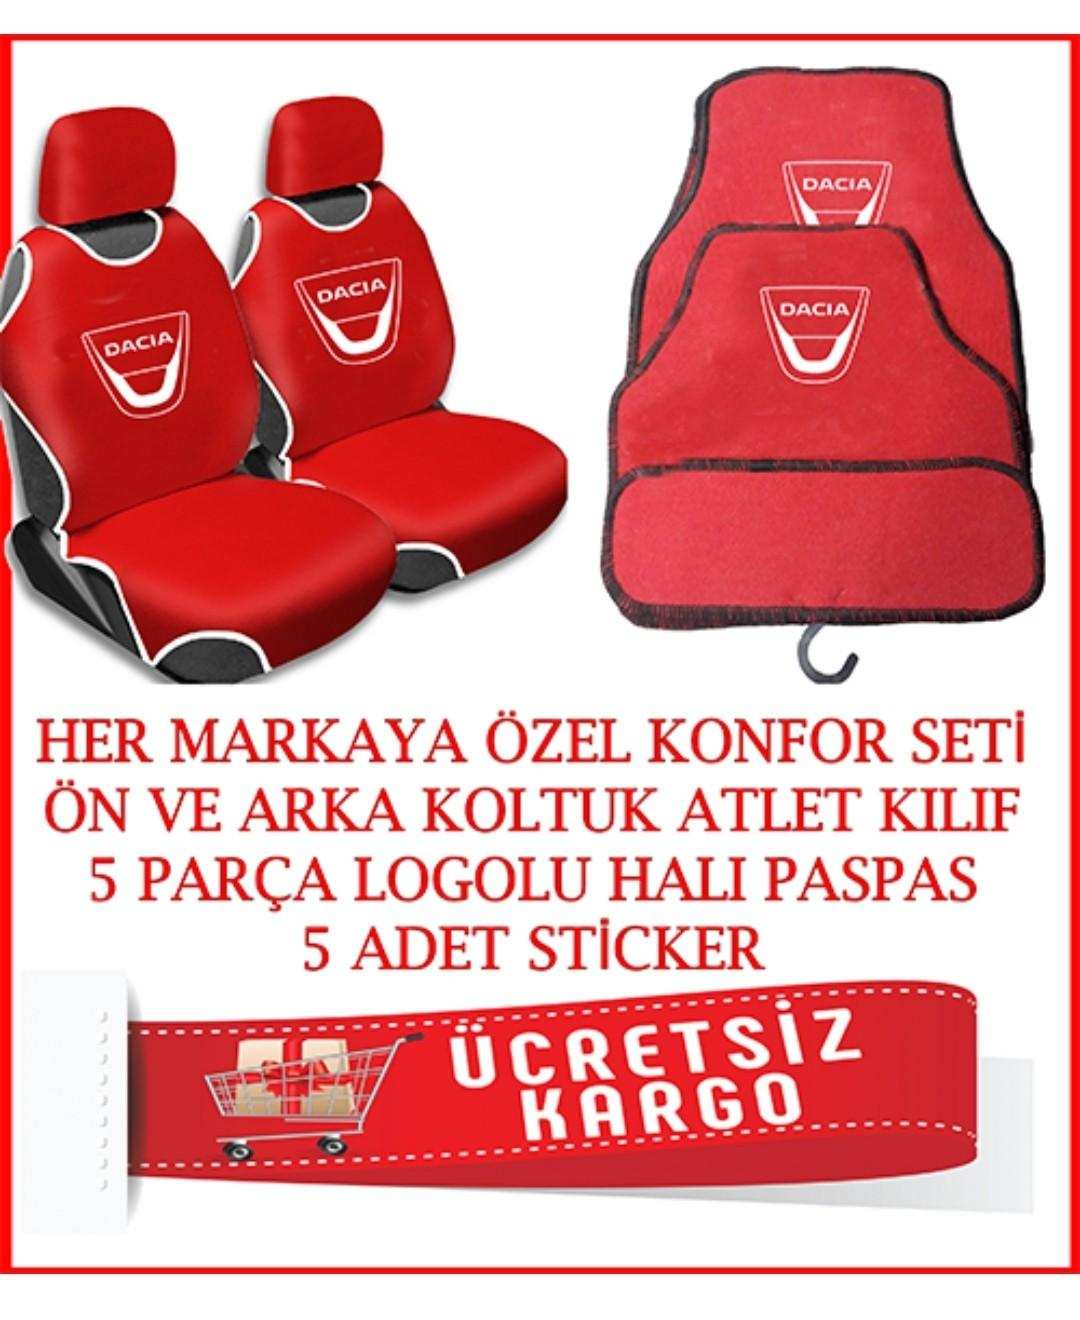 Dacia Oto Koltuk Atlet Kılıfı Ön Arka Set Logolu paspas Hediyel